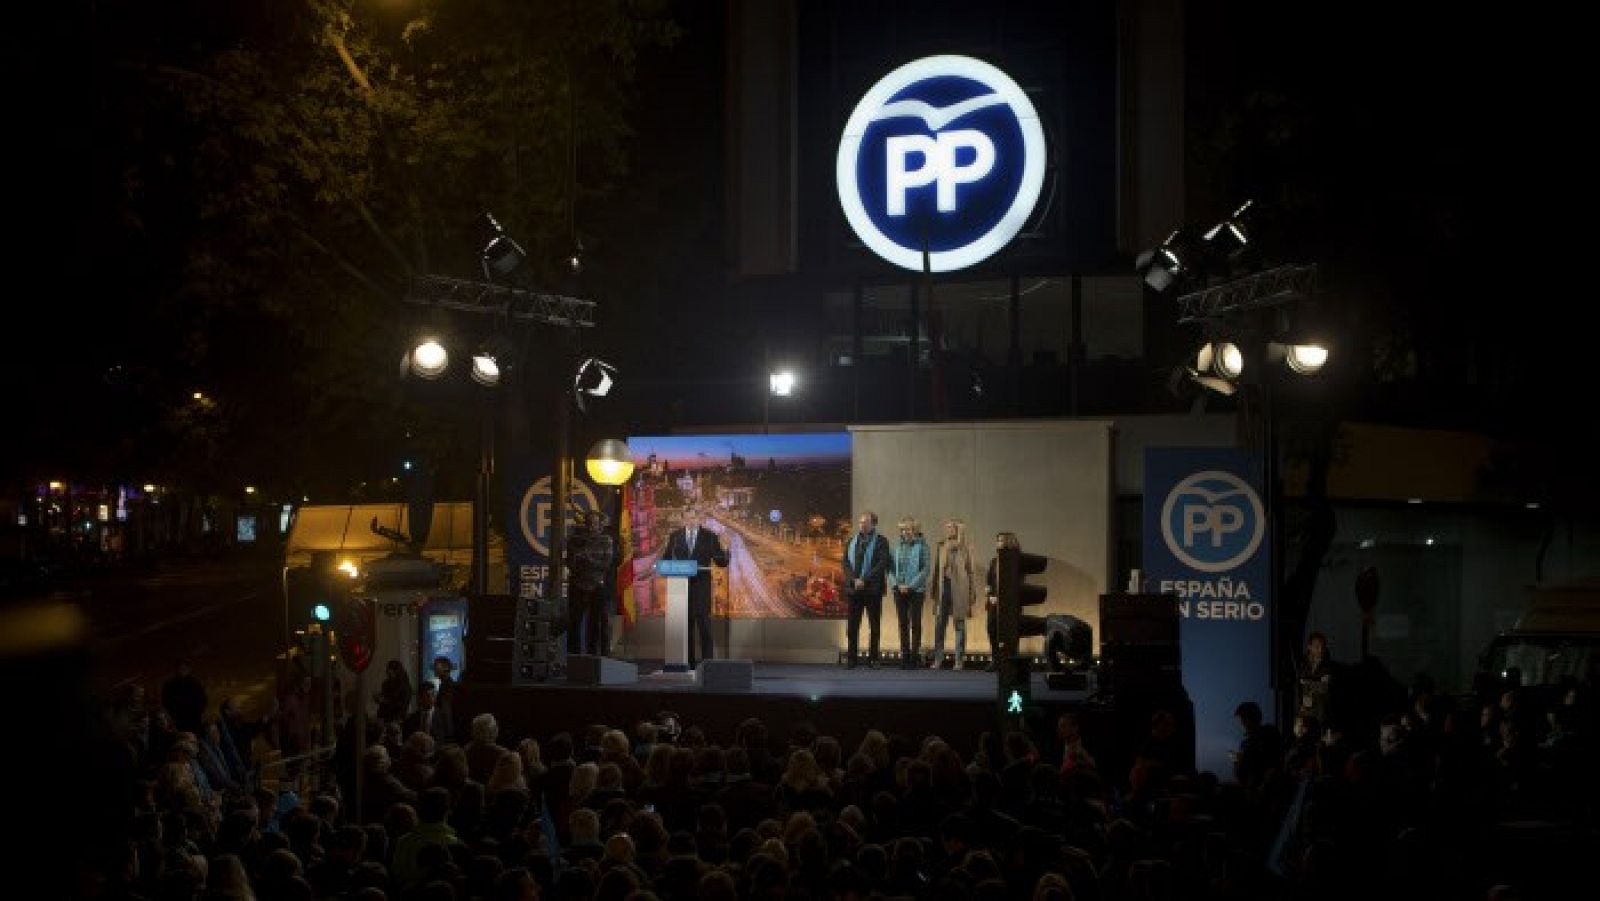 El delator de la Gürtel: "El PP tiene un modo de actuación que no se quitará jamás"